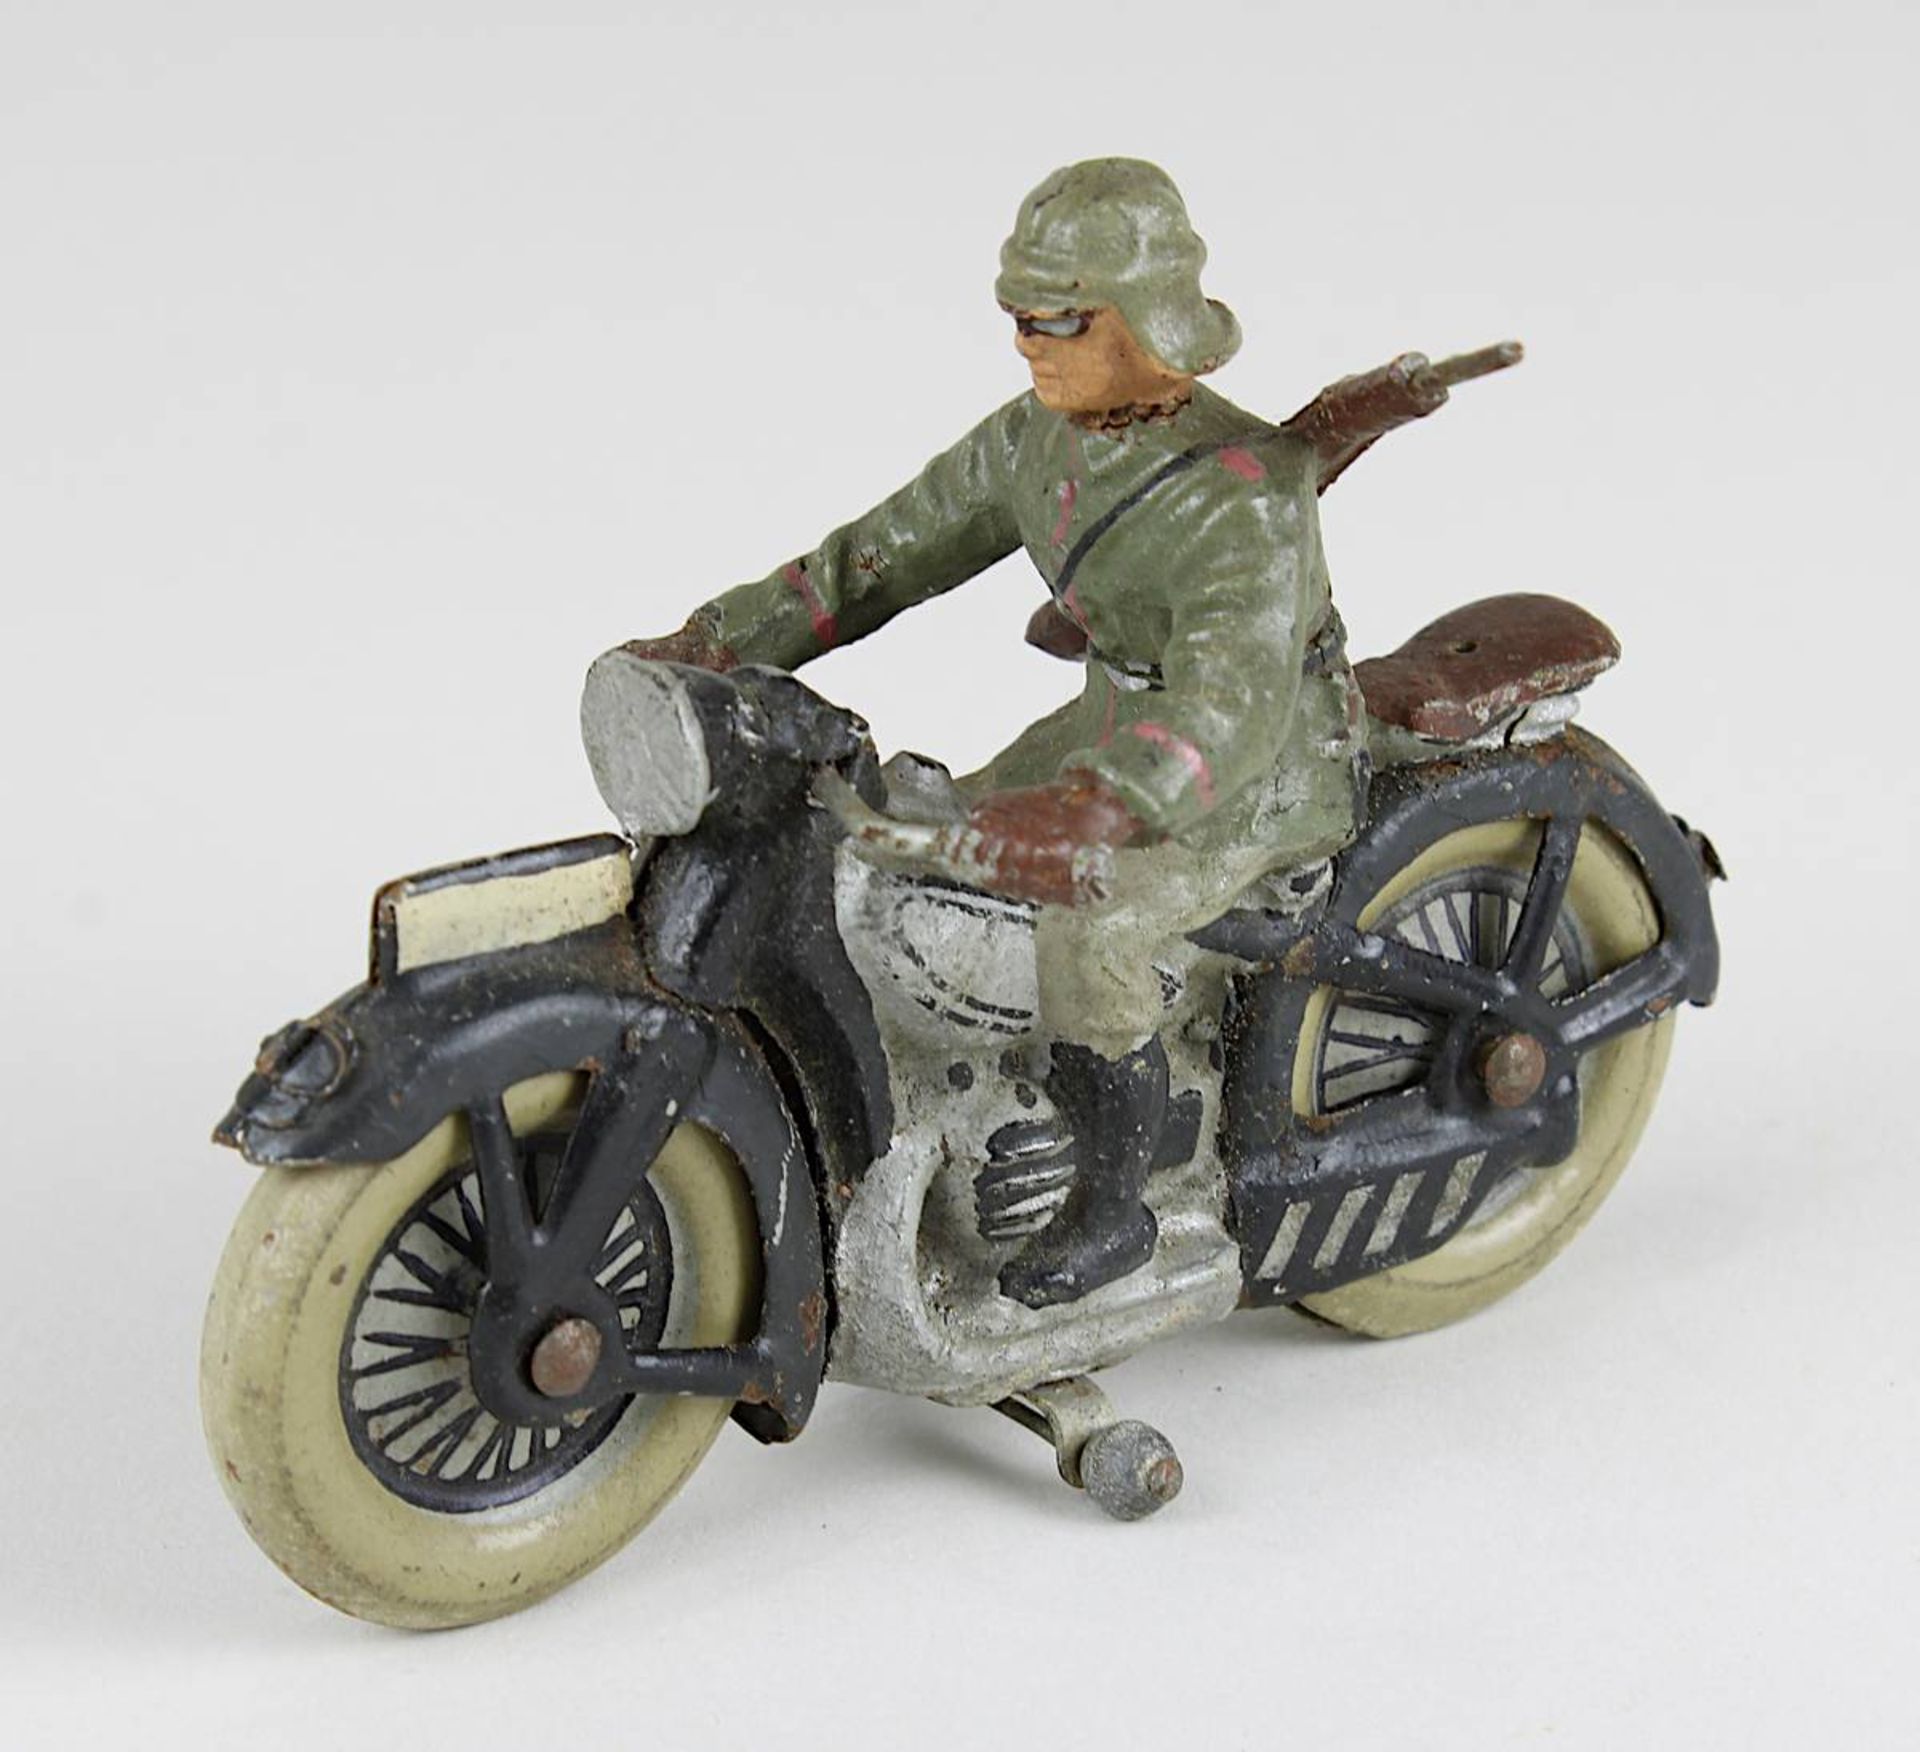 Seltener Elastolin- oder Linoleum-Soldat auf Motorrad, Deutsches Reich 1933 - 1945, wohl BMW R12,